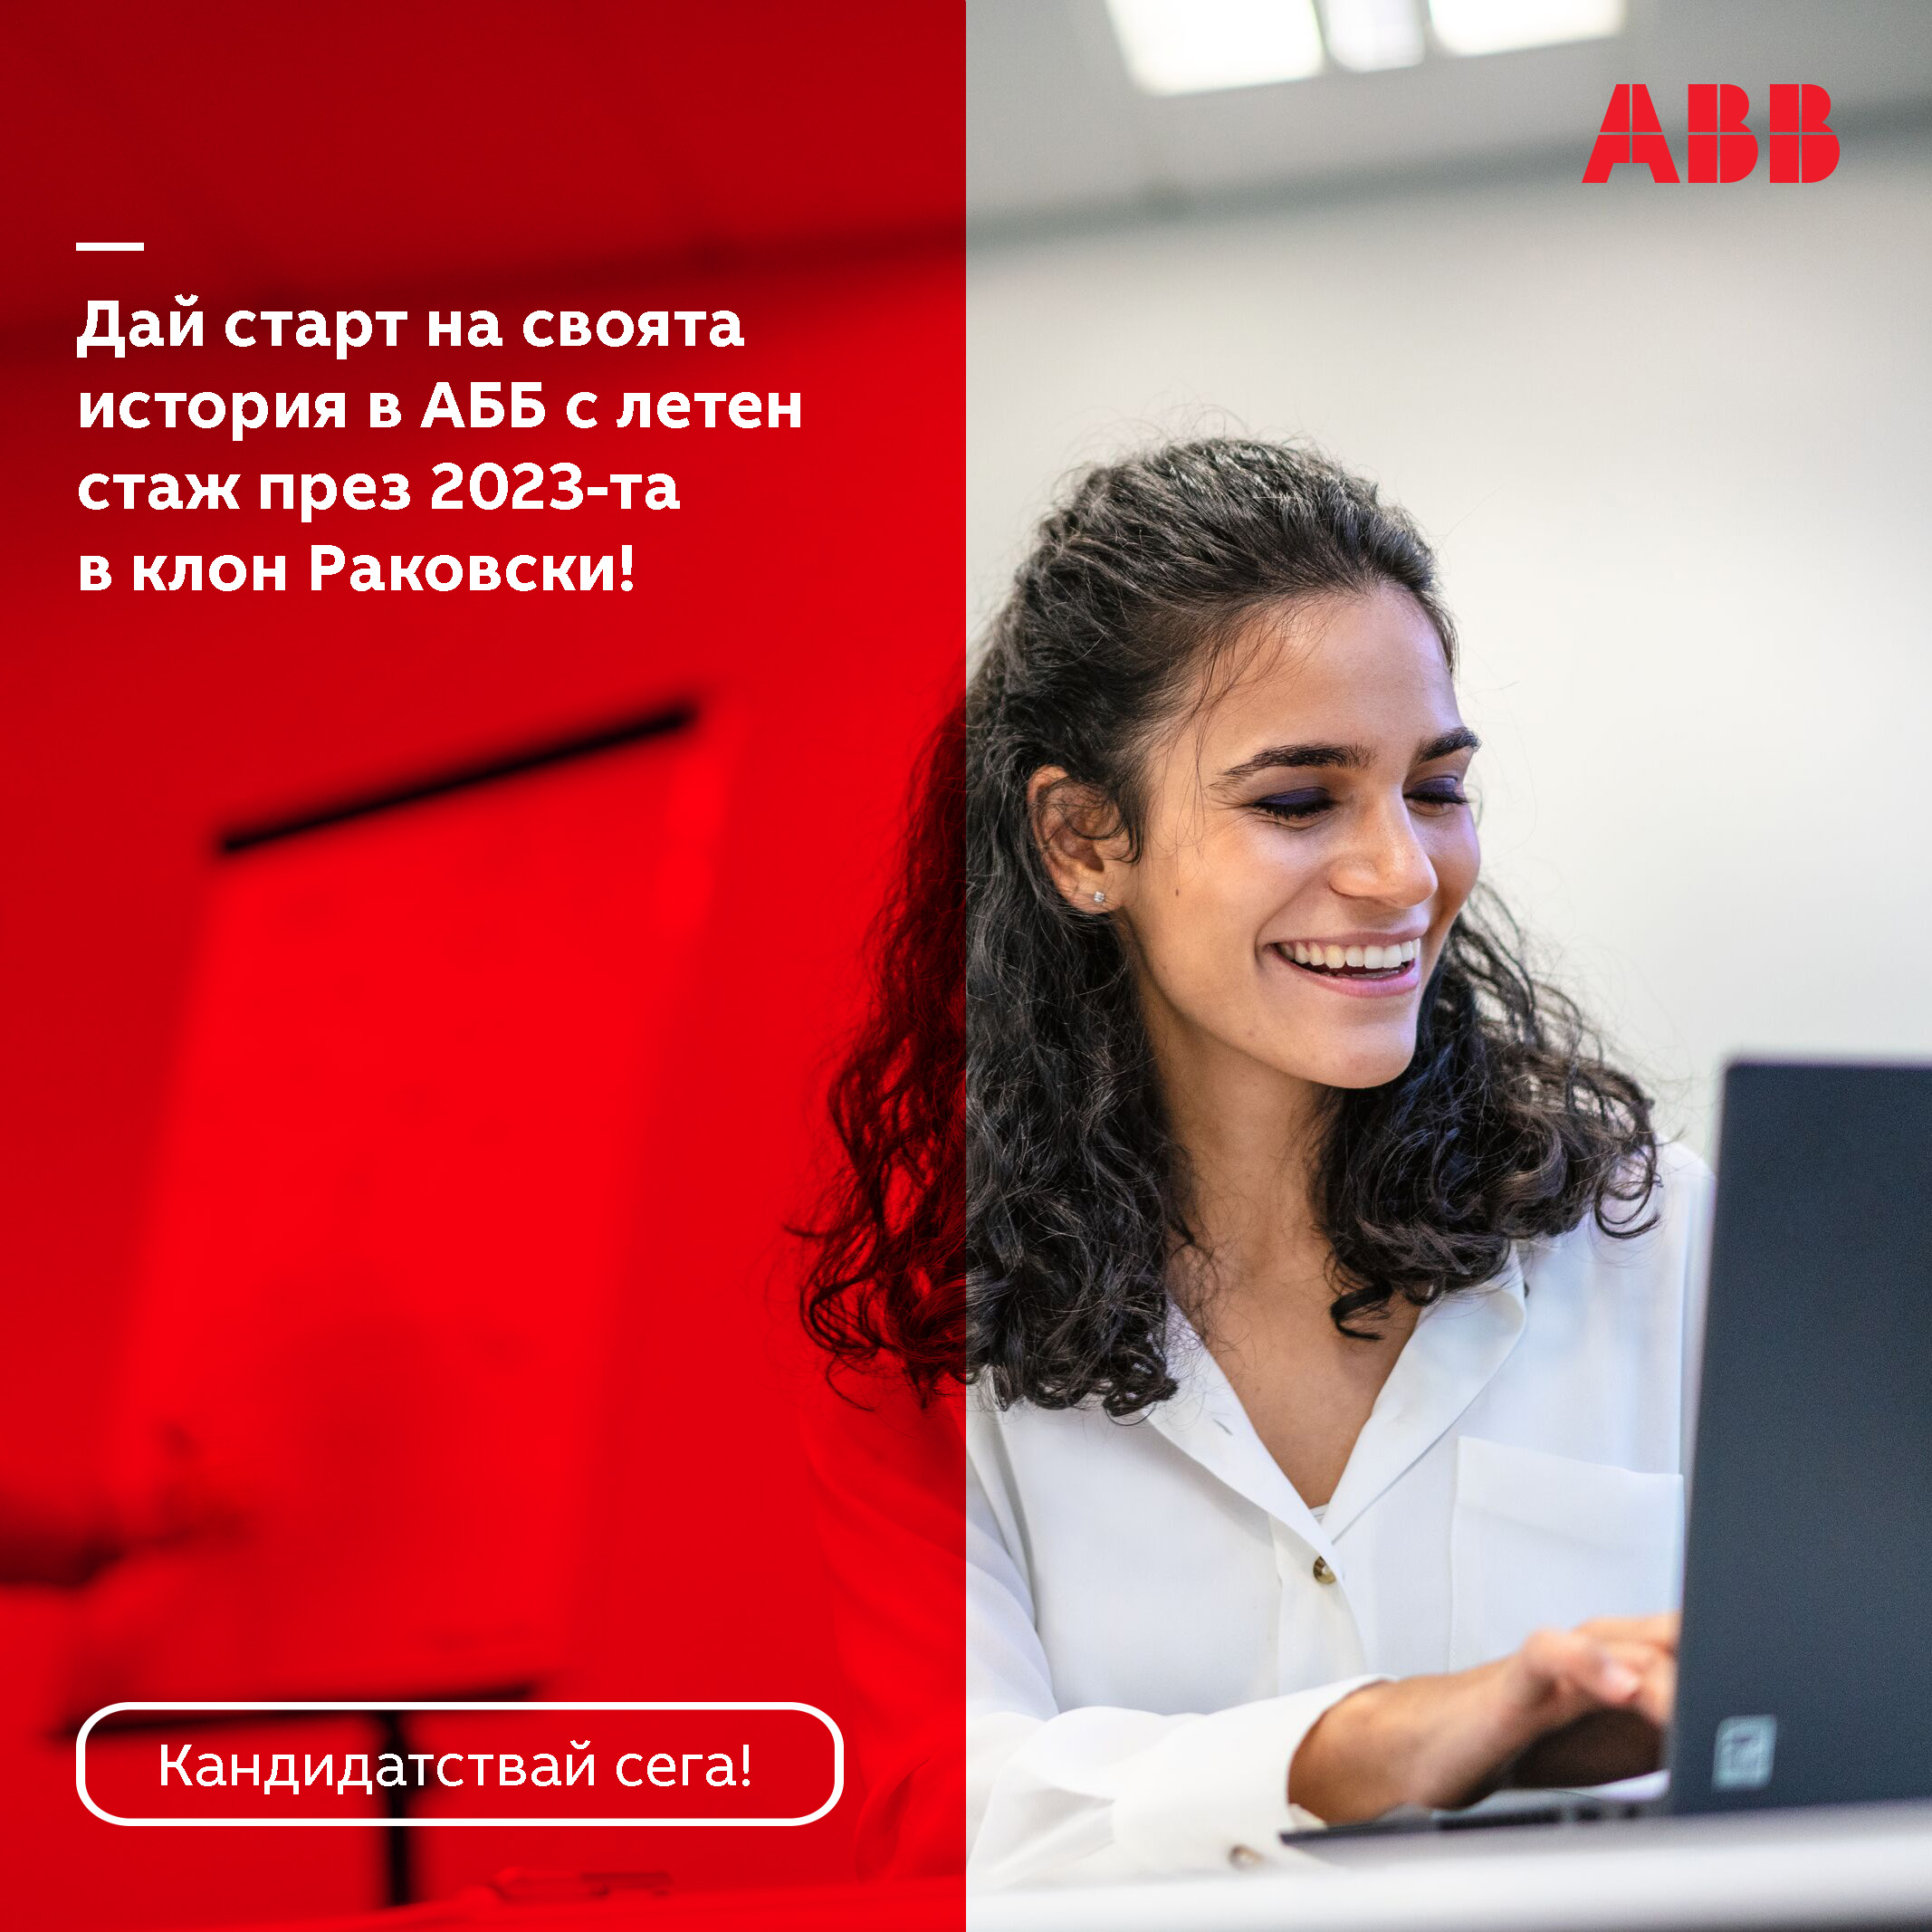 Лятна стажантска програма на АББ България: Let your ABB story begin .